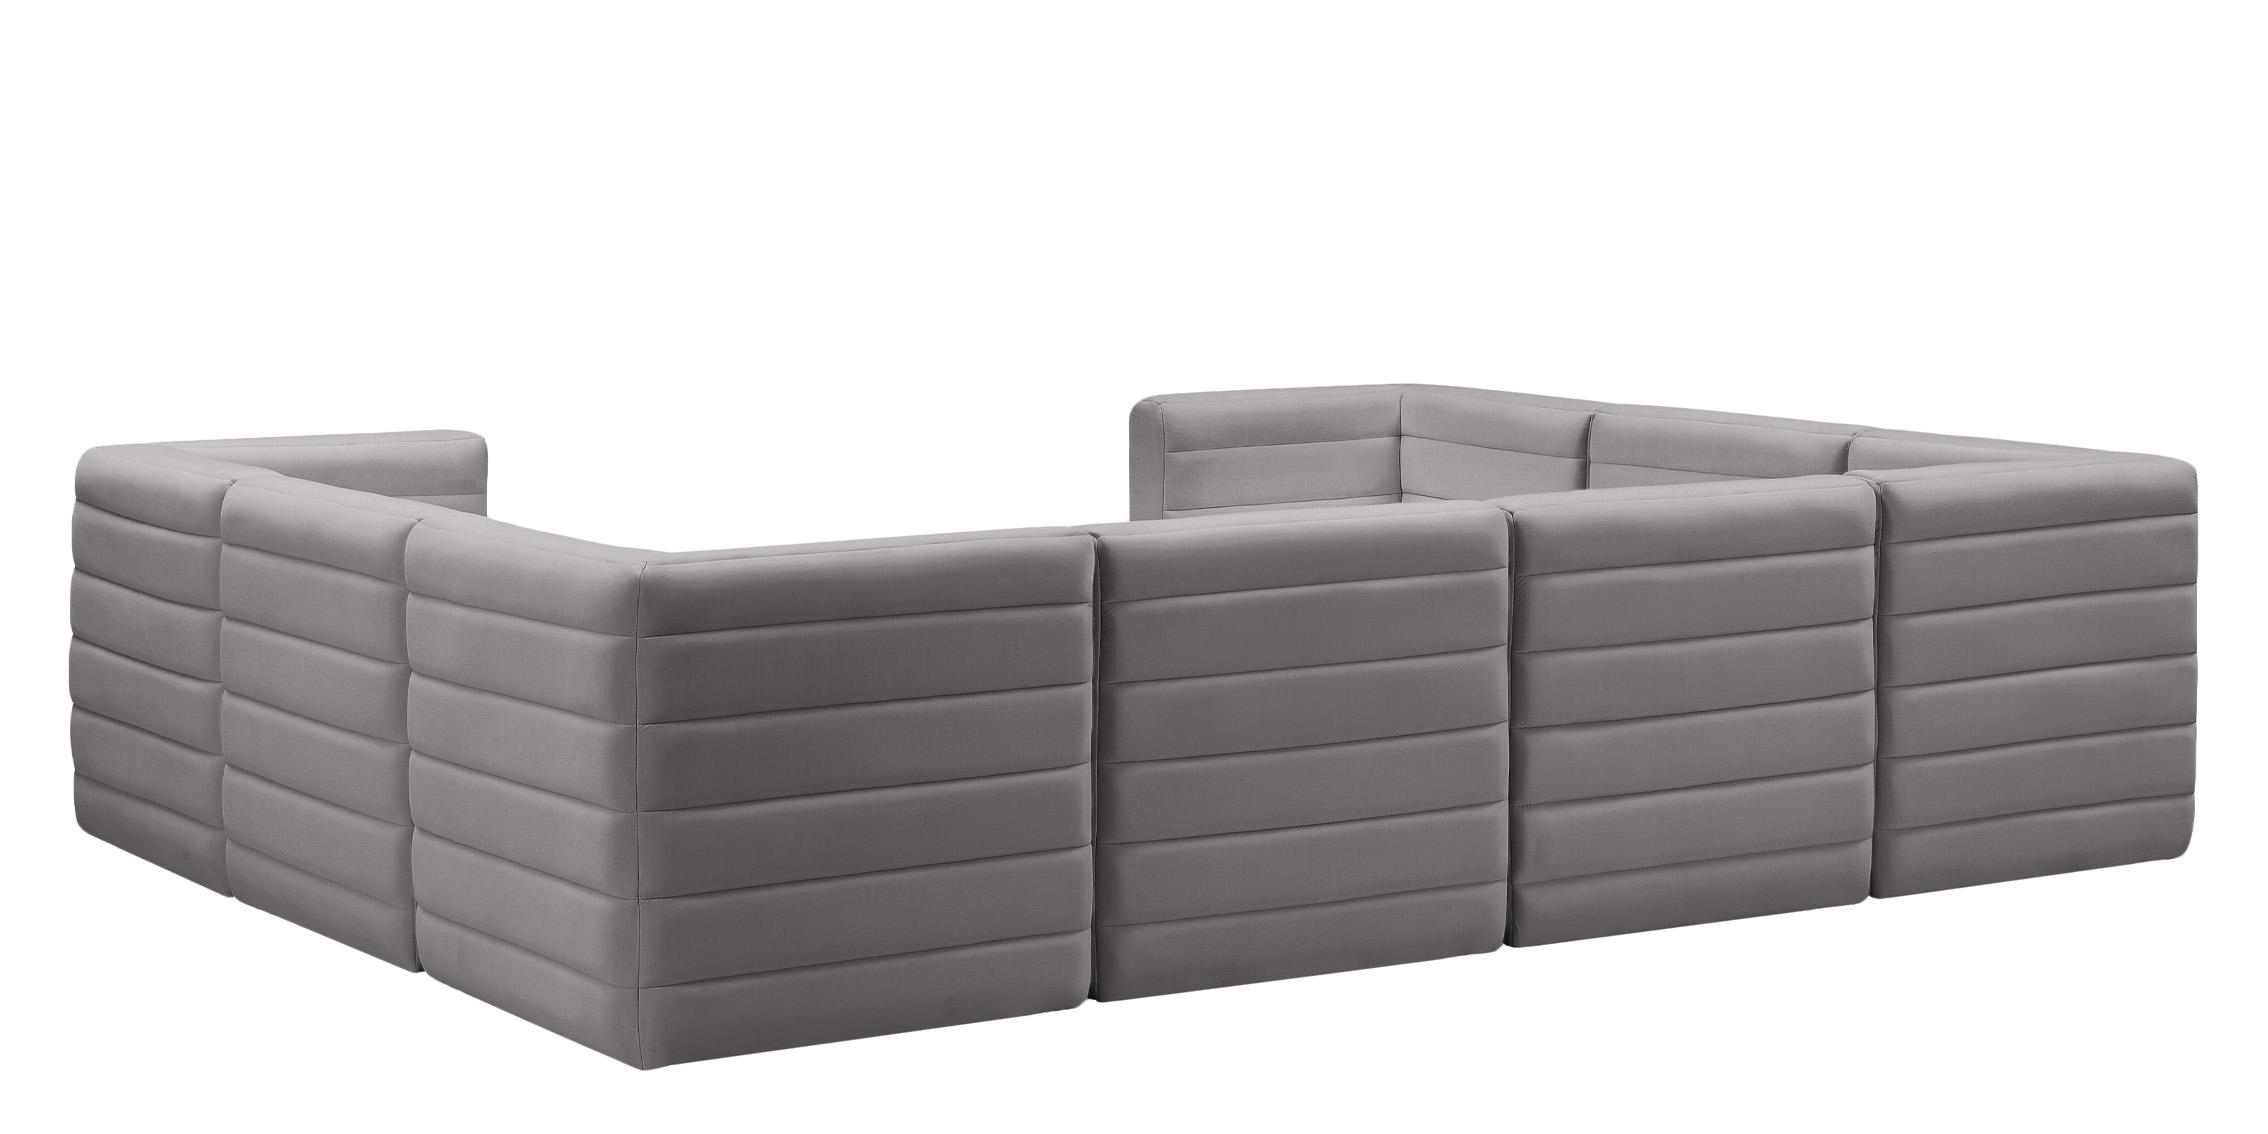 

    
677Grey-Sec8A Meridian Furniture Modular Sectional Sofa
